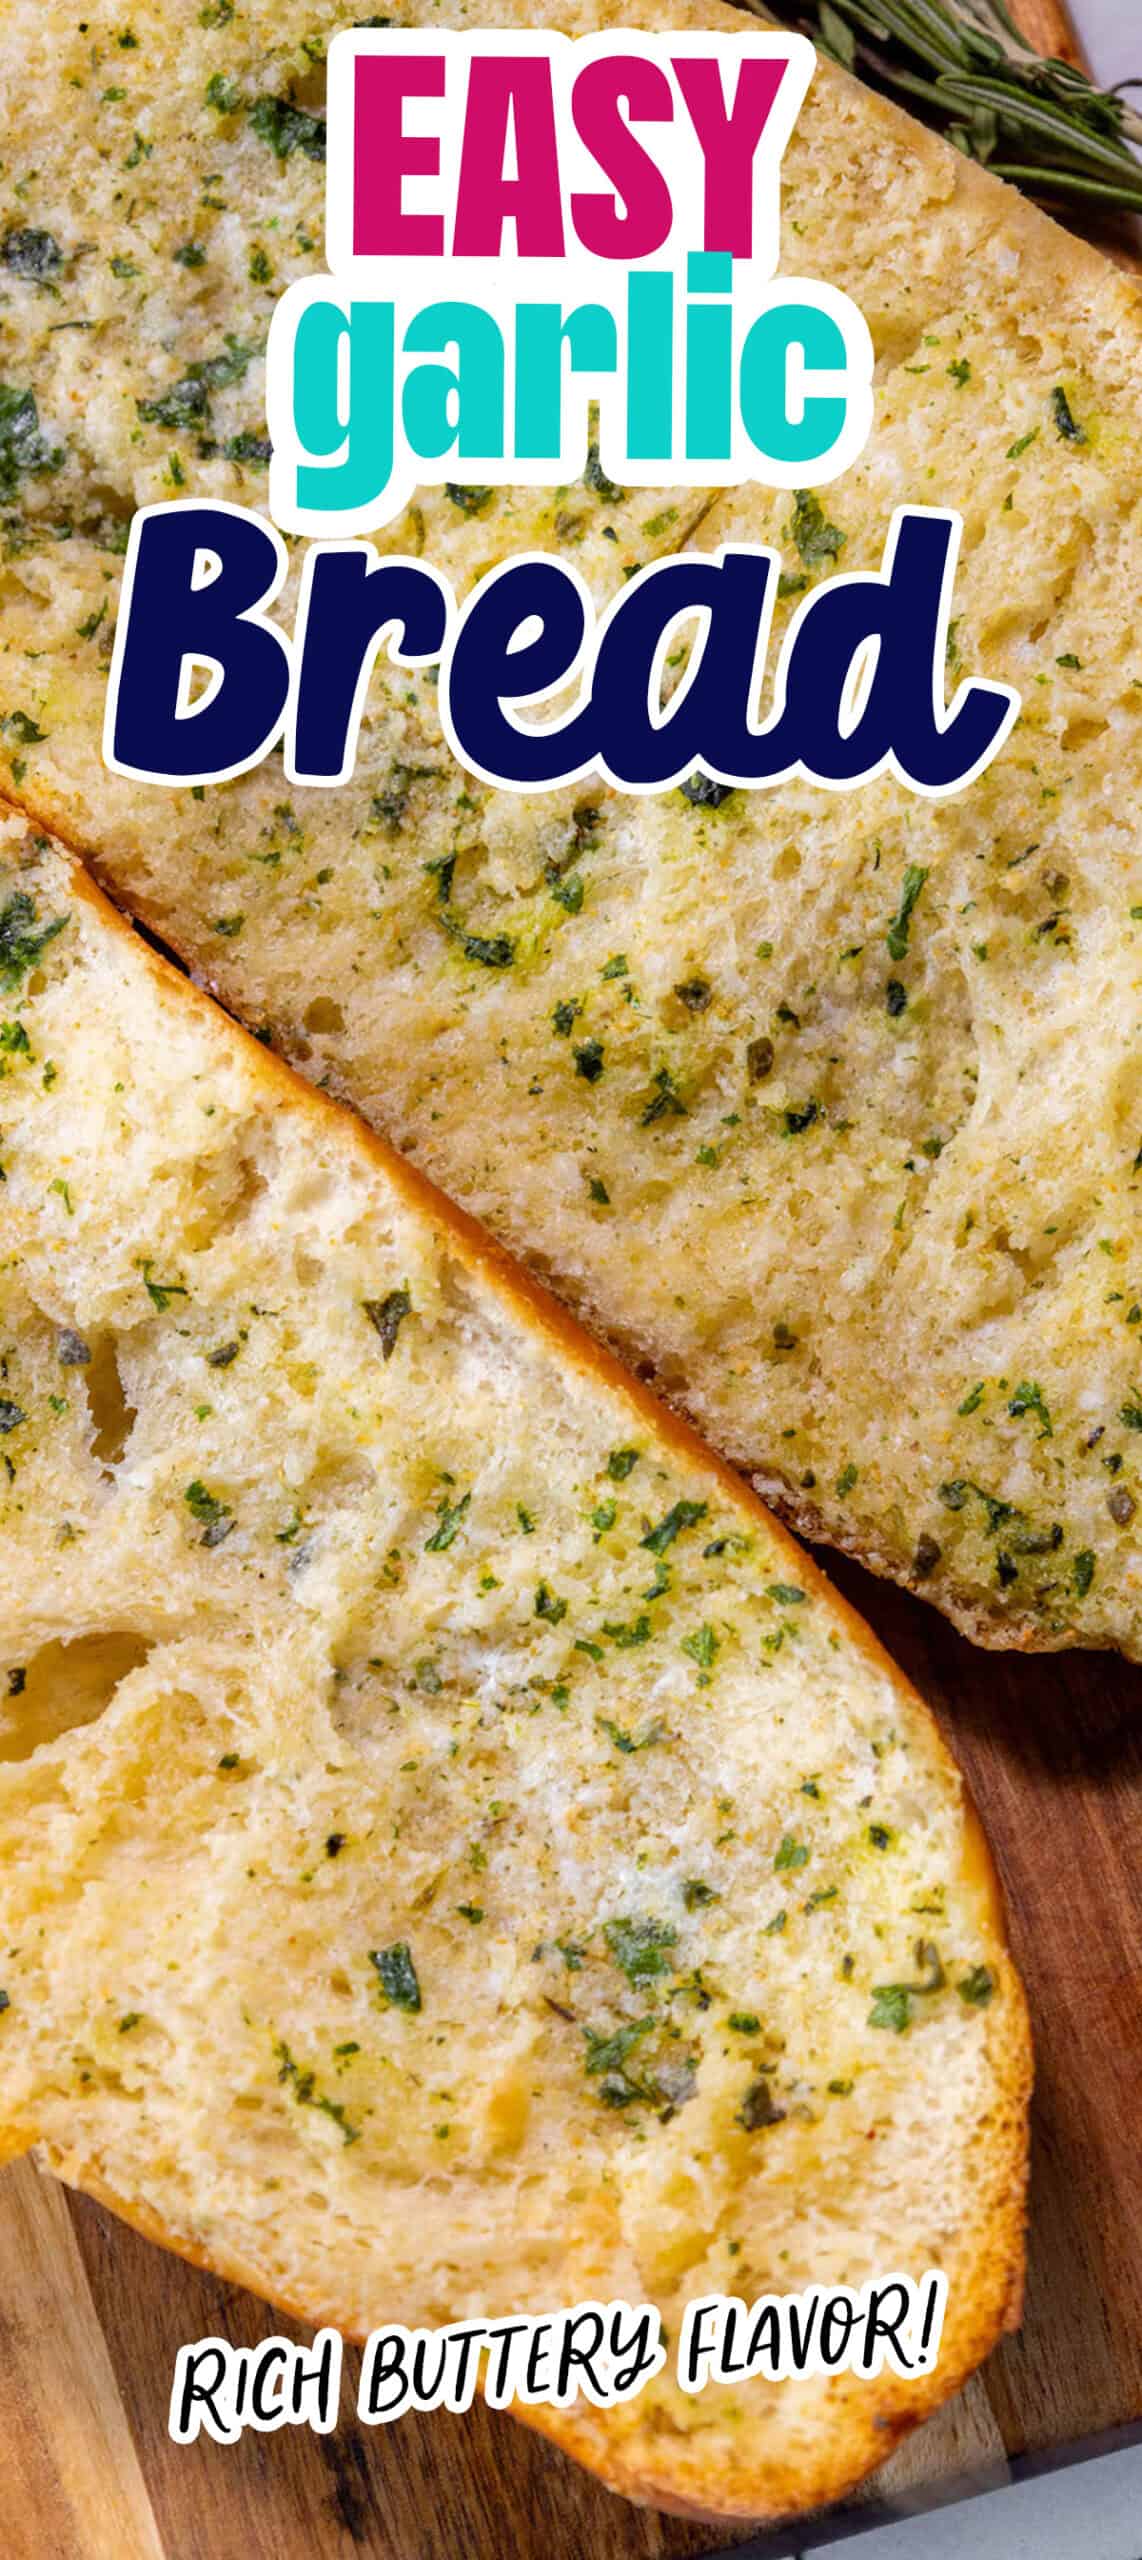 Easy garlic bread.